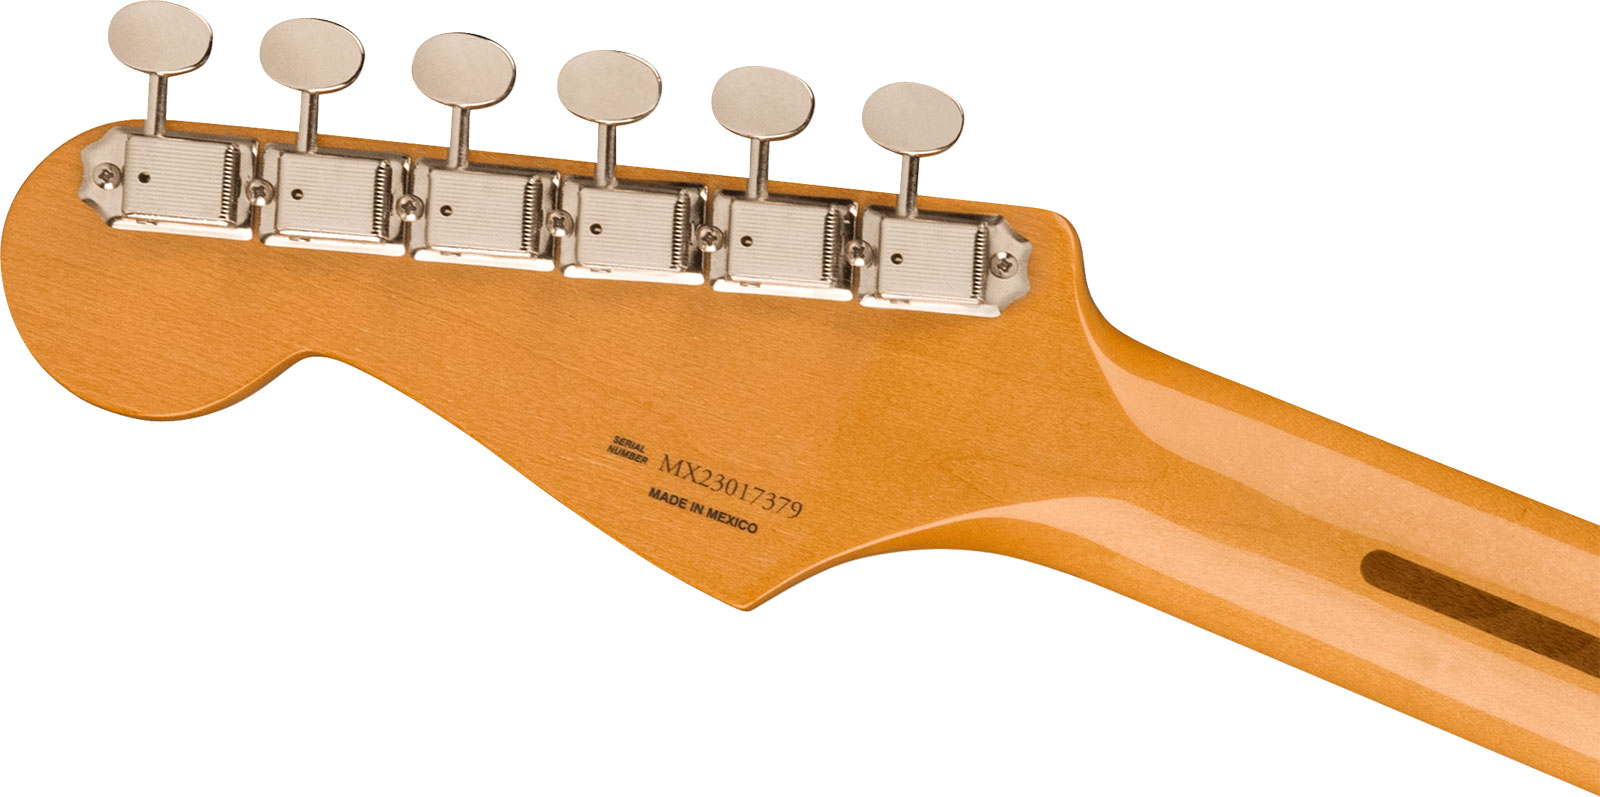 Fender Strat 50s Vintera 2 Mex 3s Trem Mn - 2-color Sunburst - E-Gitarre in Str-Form - Variation 3